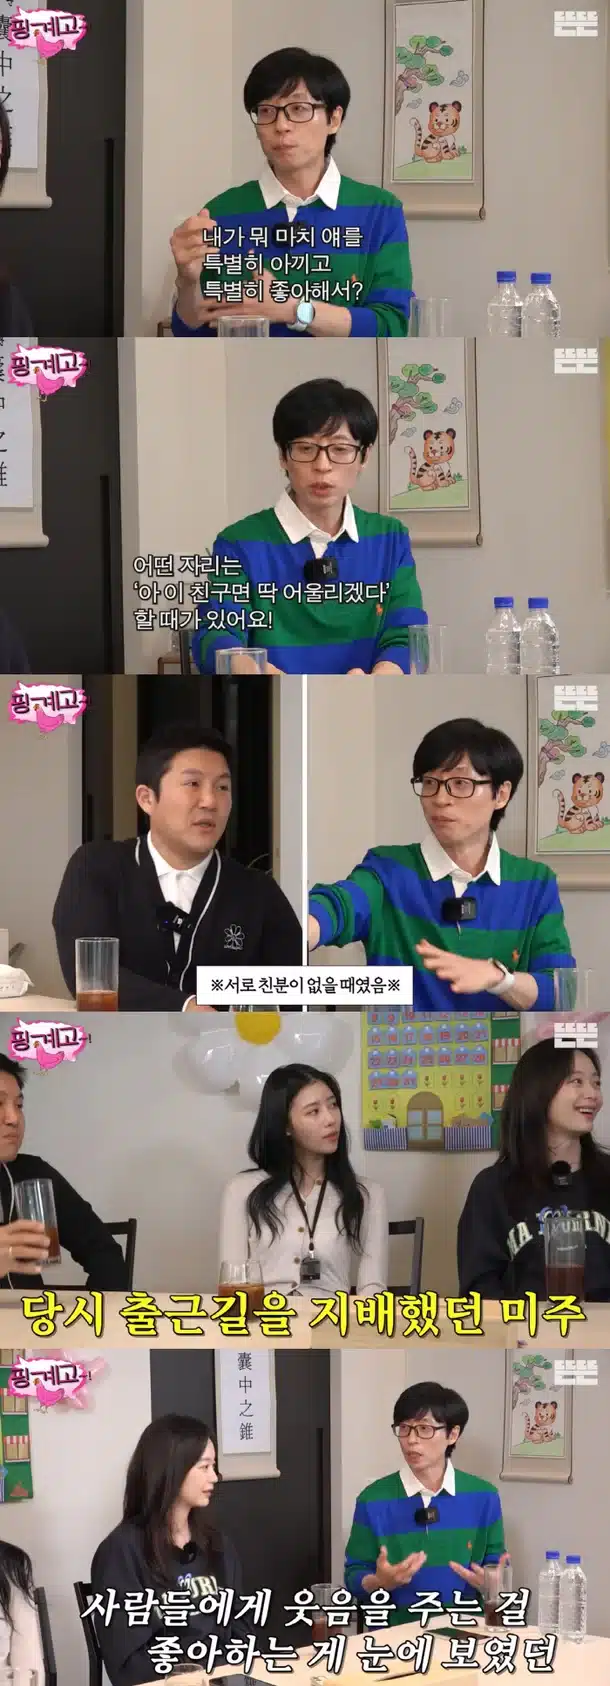 Ю Джэ Сок рассказал, как рекомендует участников для развлекательных шоу: "Я осмотрителен"